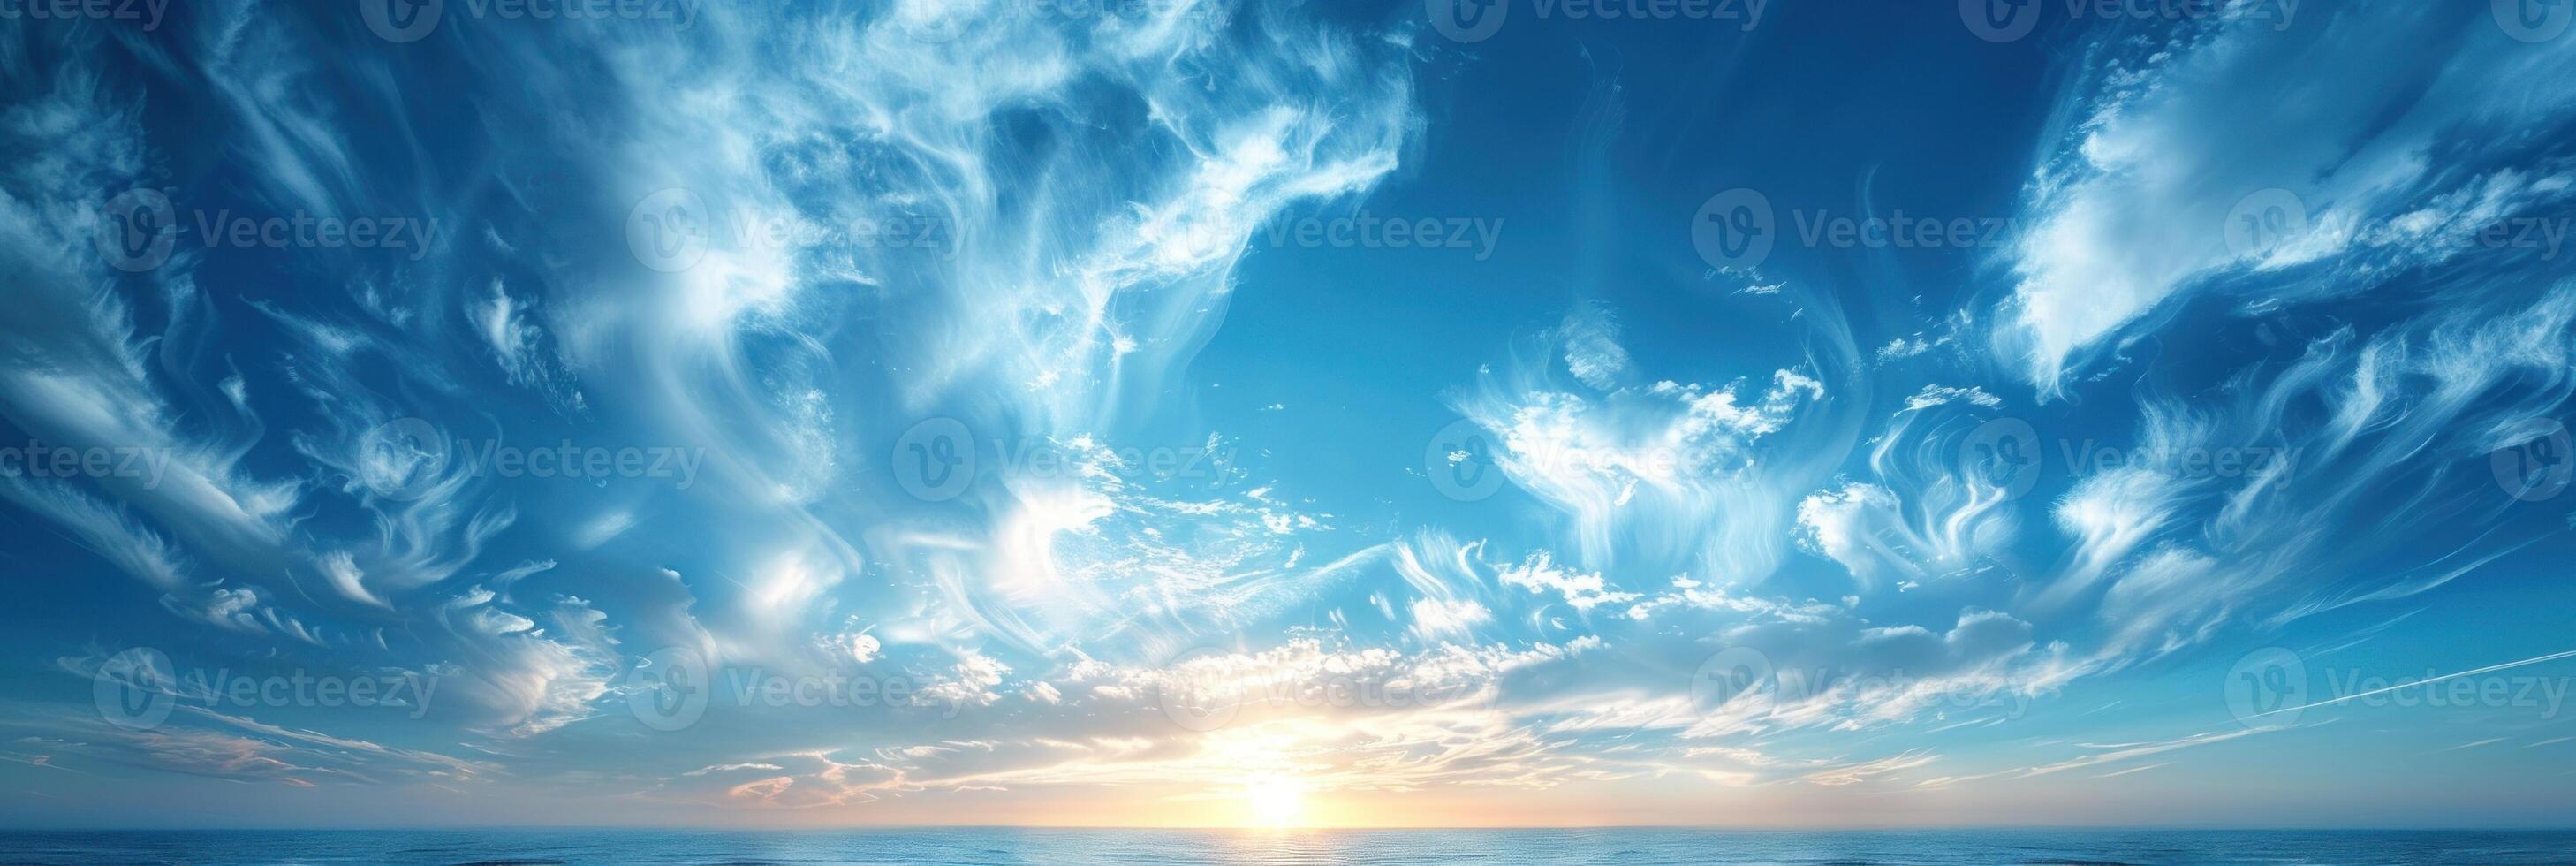 soles rayos descanso mediante nubes, esclarecedor Oceano aguas foto